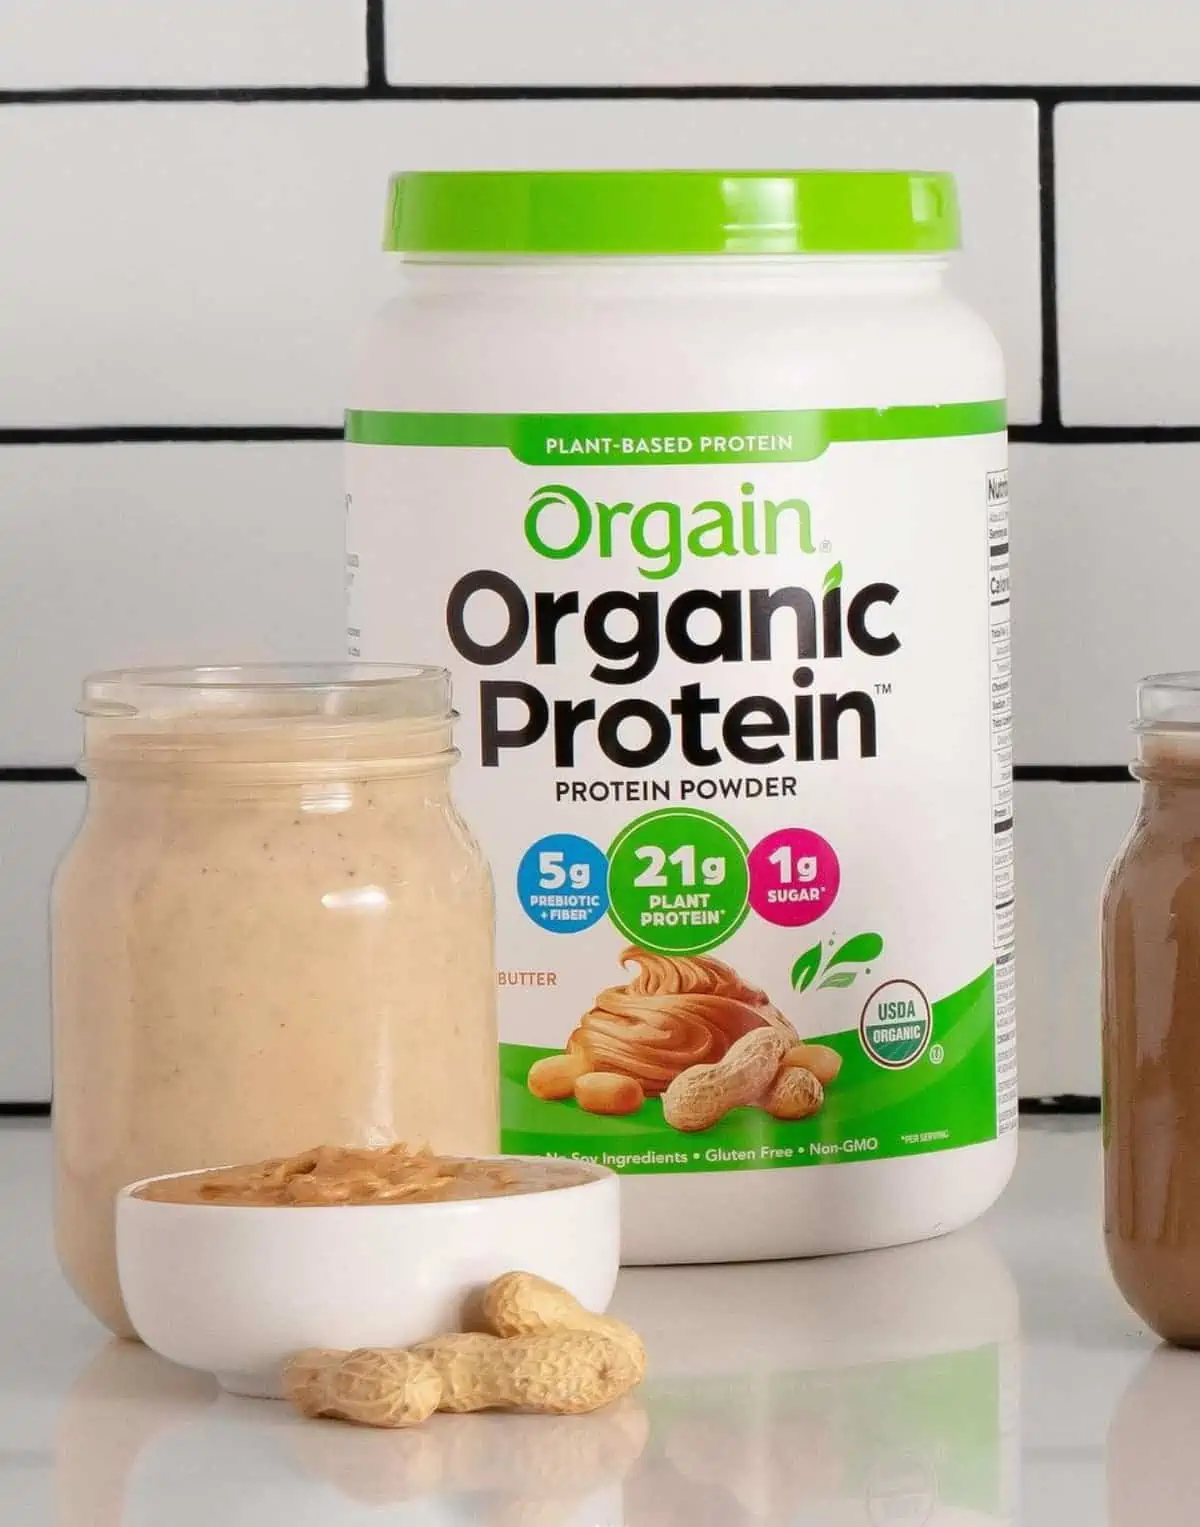 Orgain organic protein powder.